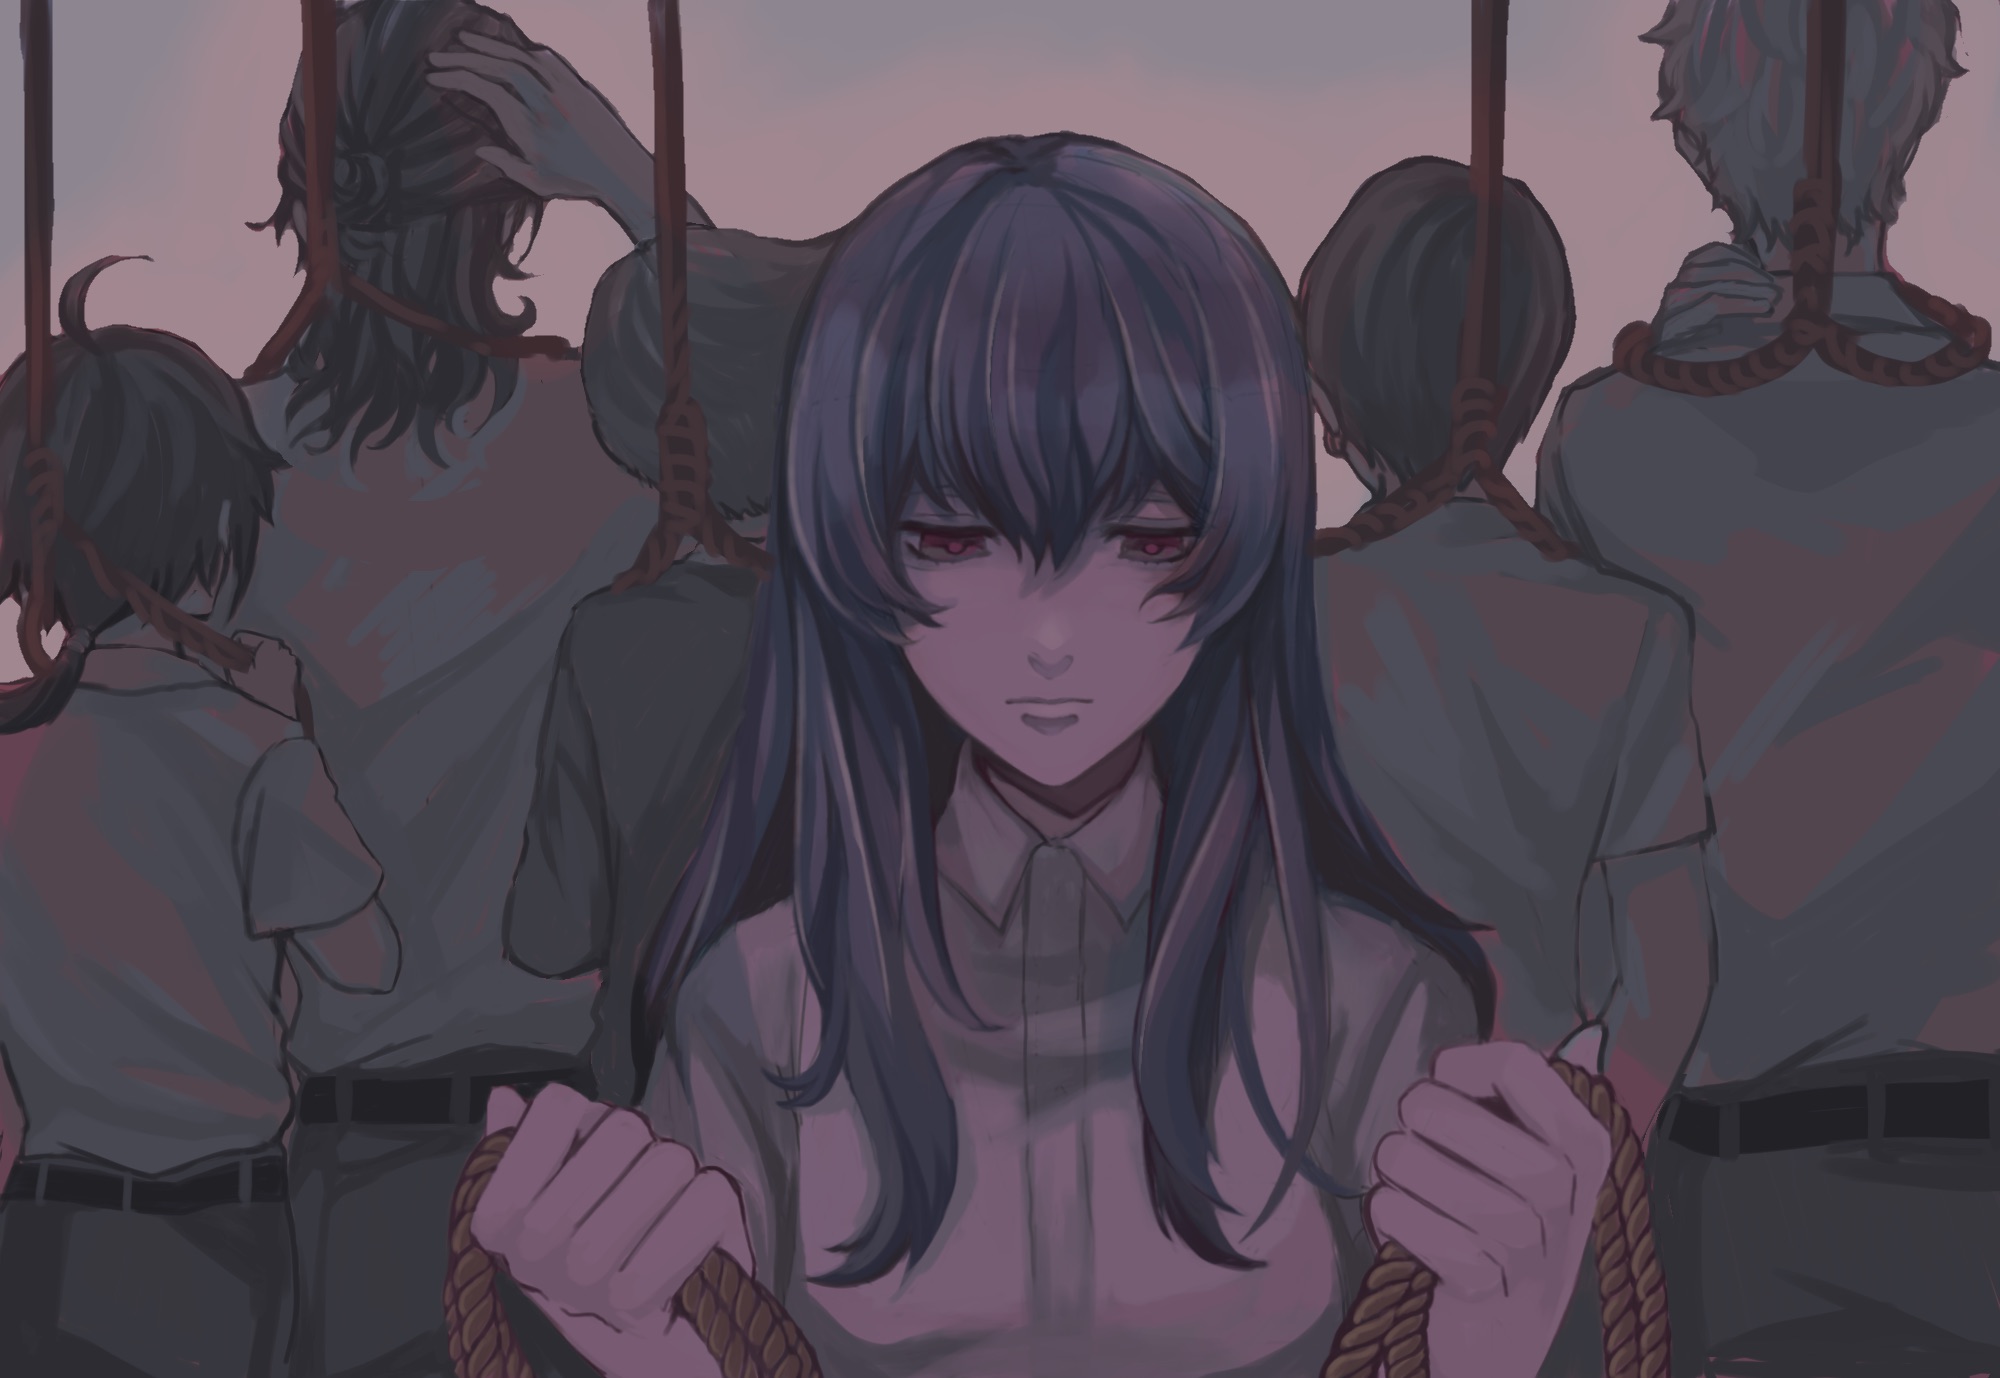 Suicidal Anime Girl | Sakura66 | Flickr-demhanvico.com.vn